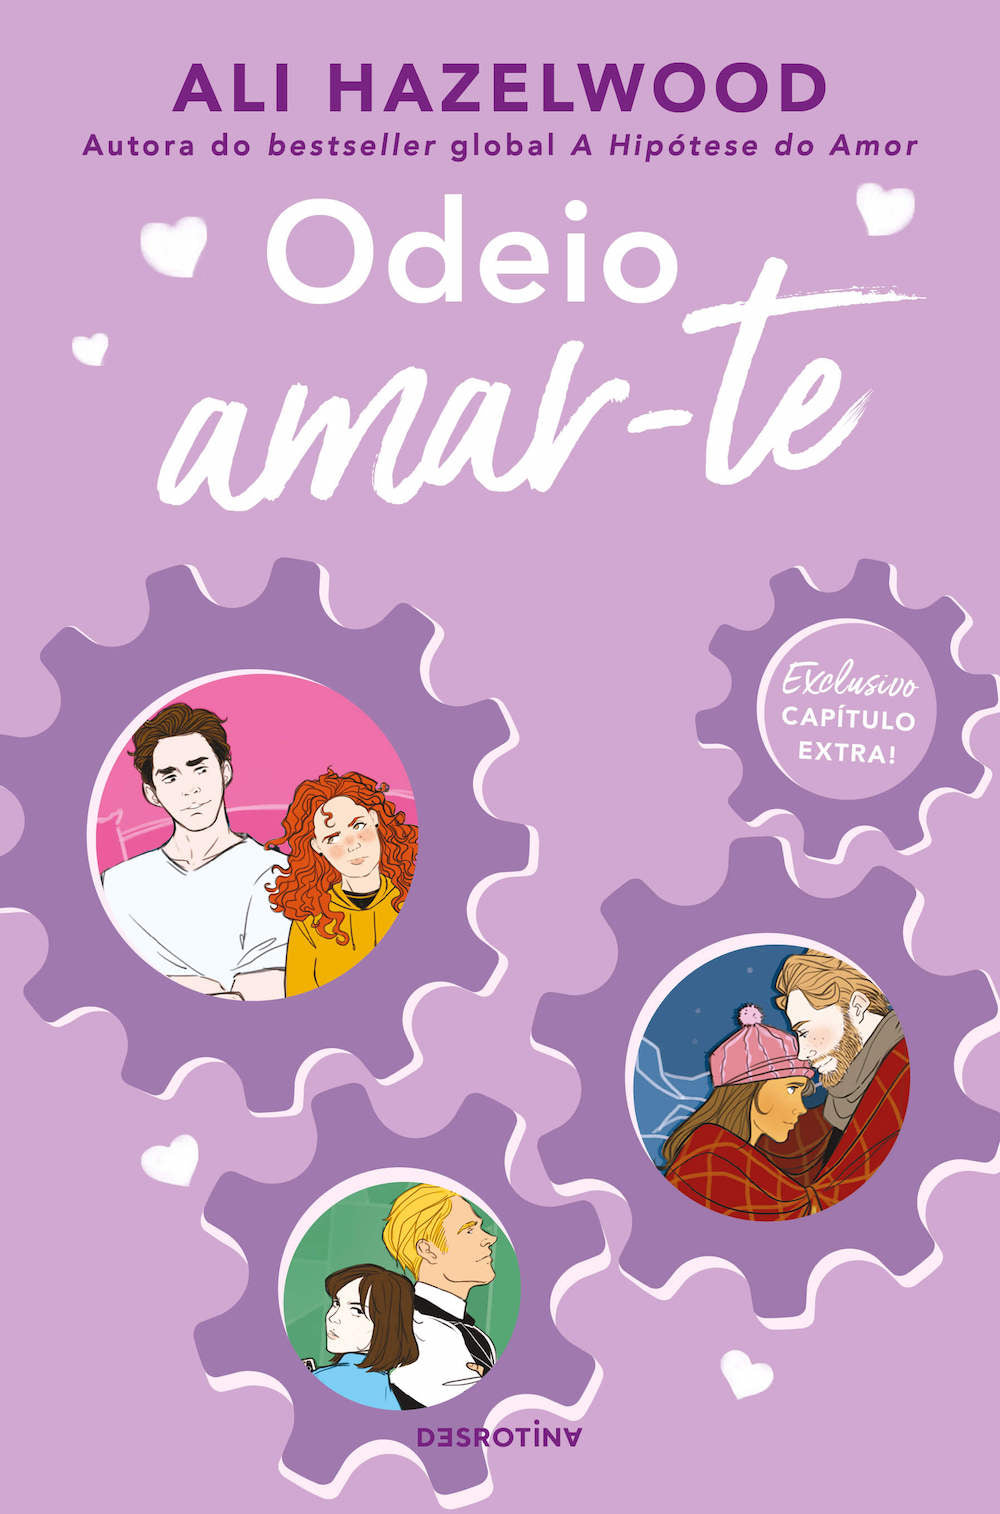  A hipótese do amor: Capítulo Extra (Portuguese Edition